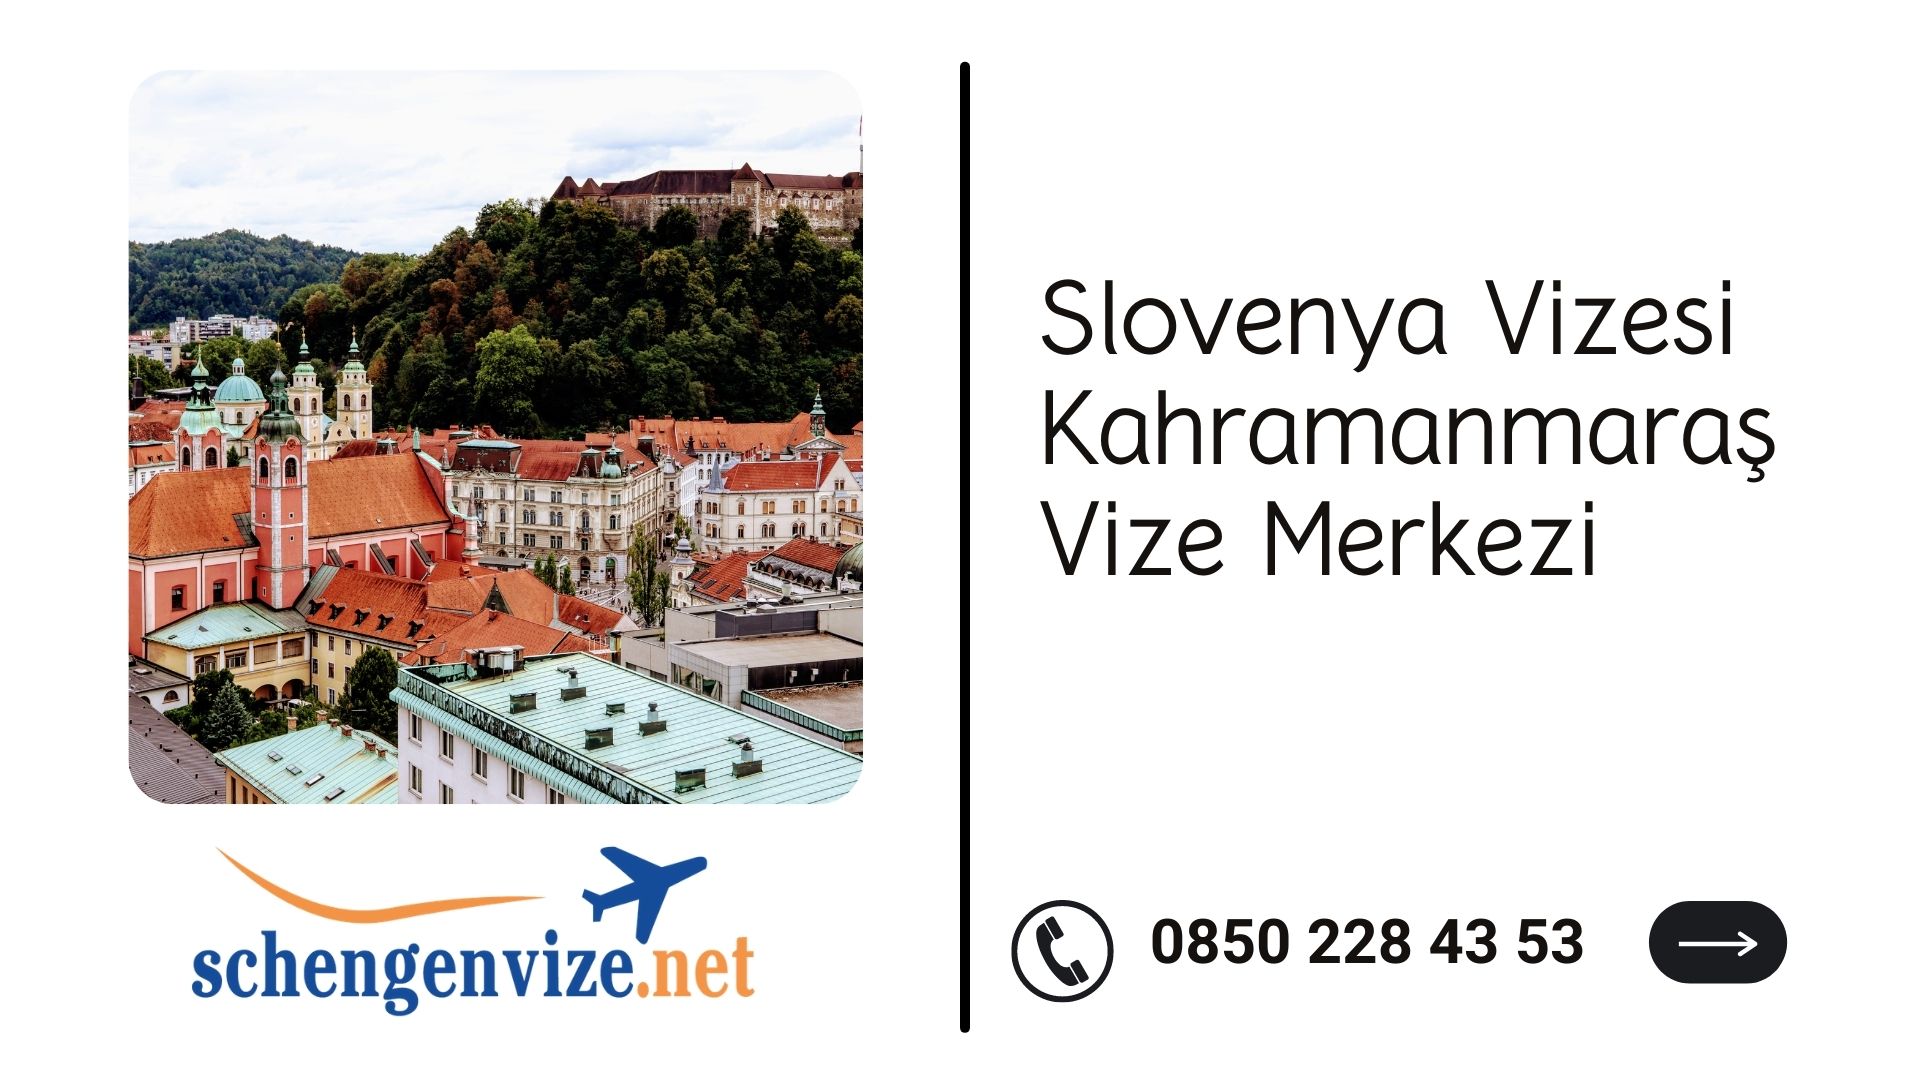 Slovenya Vizesi Kahramanmaraş Vize Merkezi